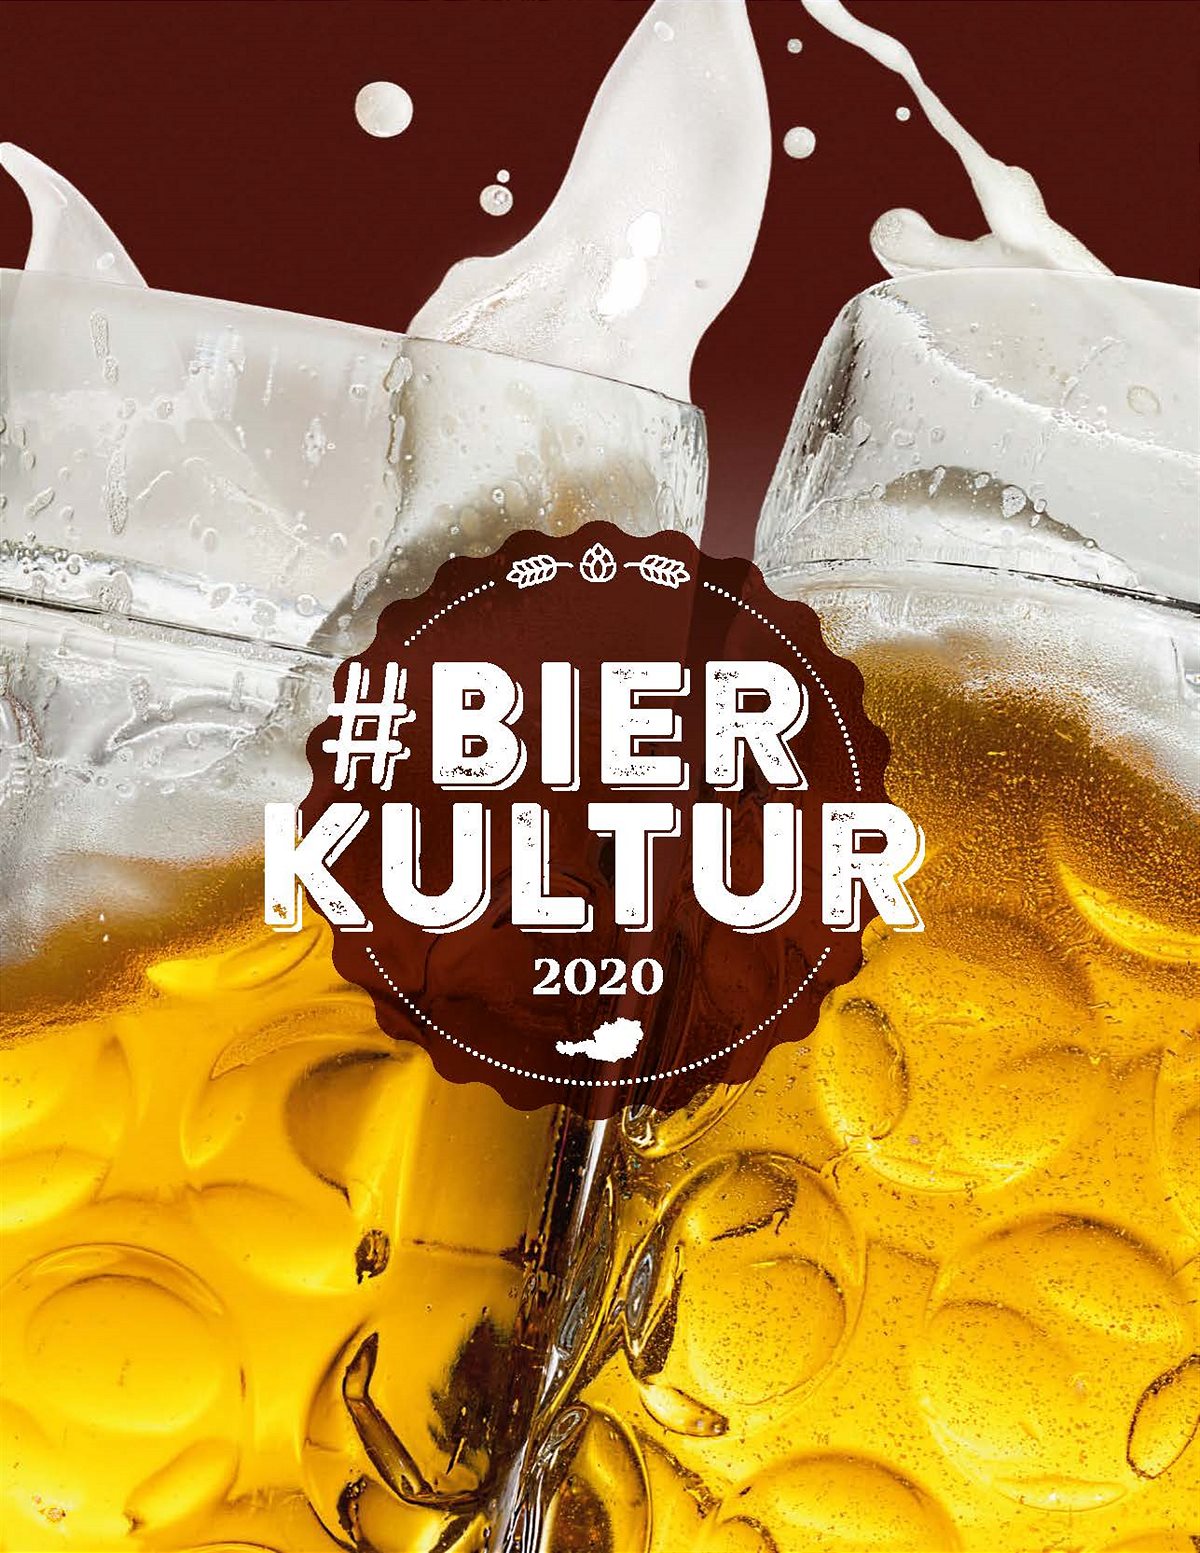 Auf dem Weg des Bieres im Bierkulturbericht 2020 liest man auch über die Ergebnisse der repräsentativen Studie zum österreichischen Konsumverhalten und eine Typisierung der Biertrinker in Österreich.